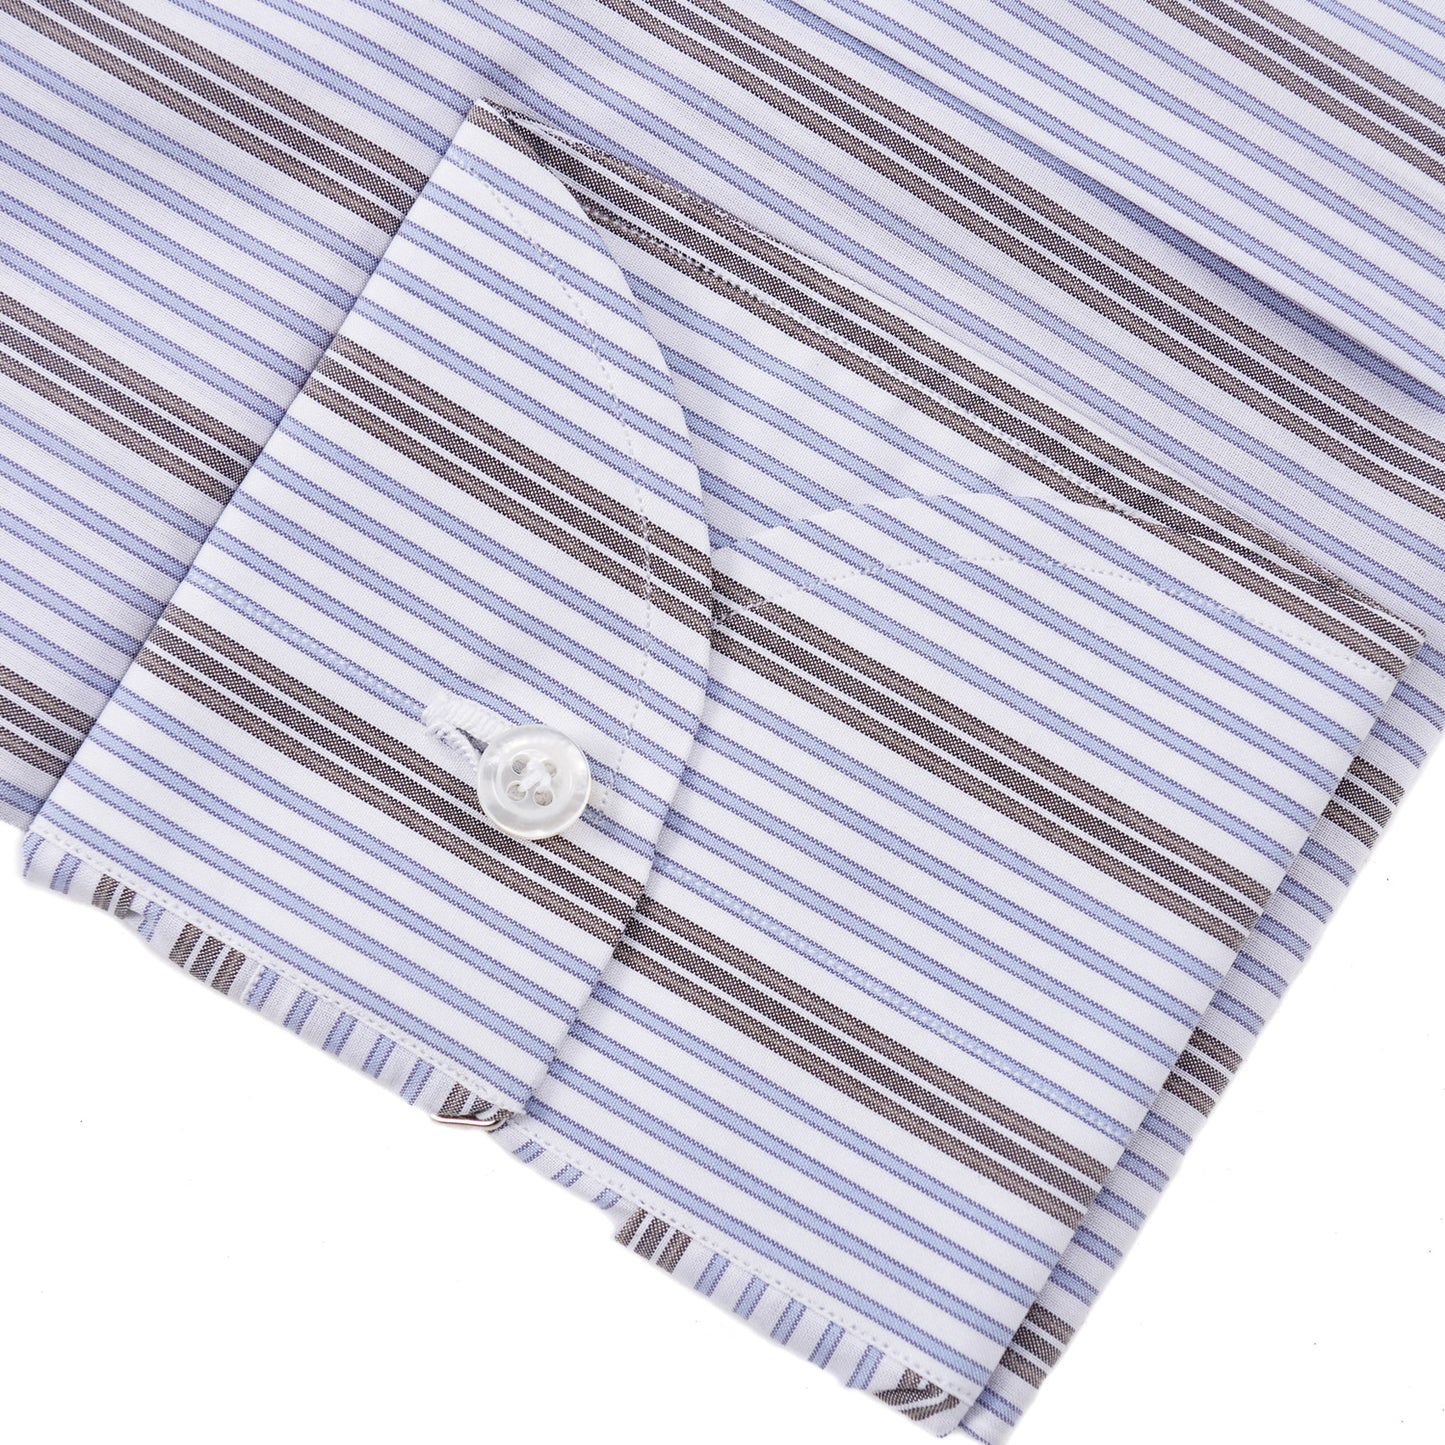 Isaia Modern 'Mix Fit' Striped Cotton Dress Shirt - Top Shelf Apparel